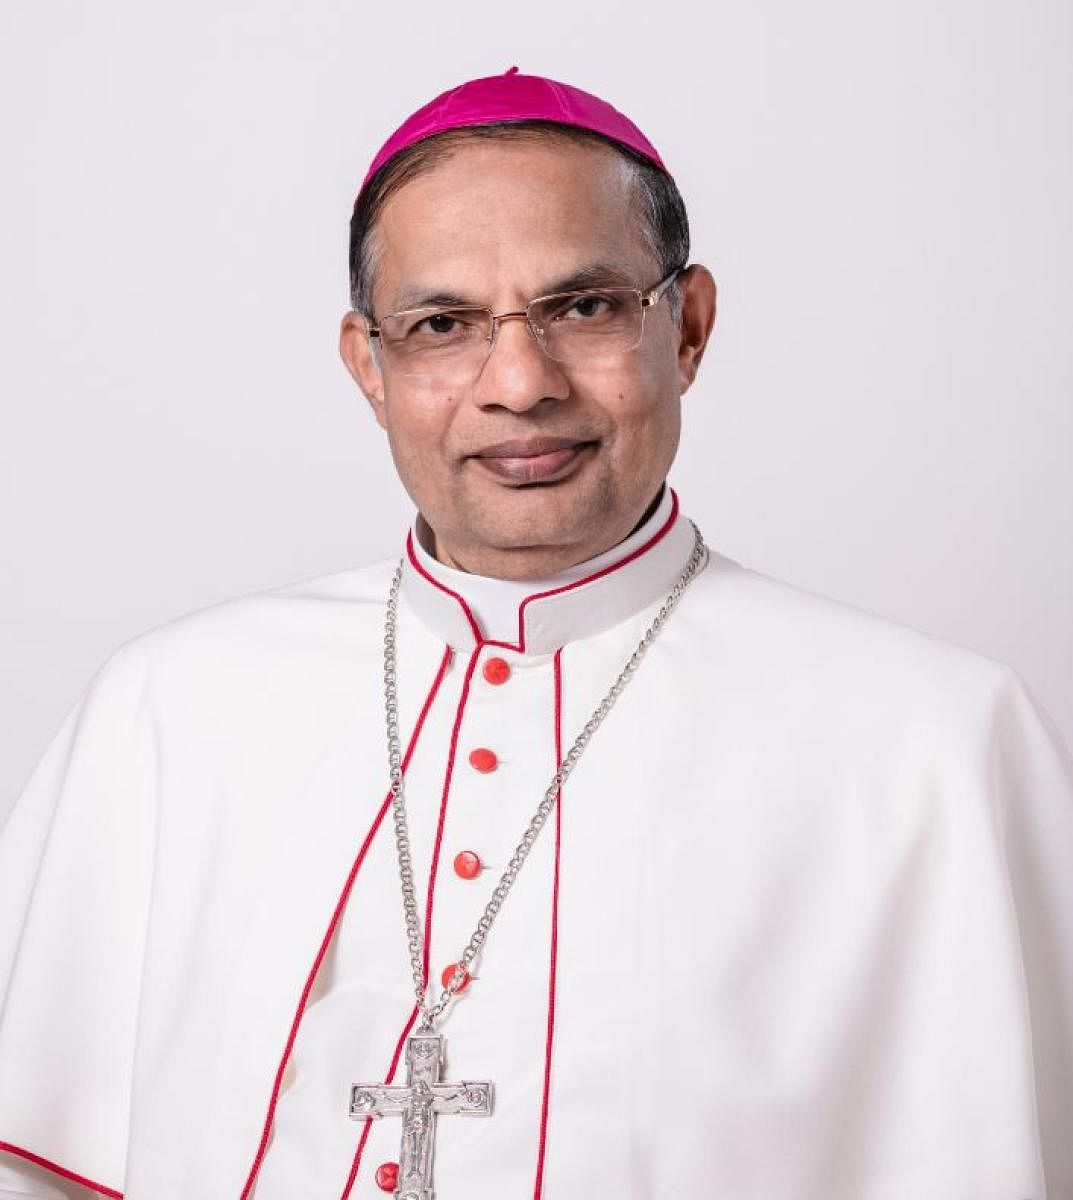 Mangaluru Bishop Rev Fr Peter Paul Saldanha